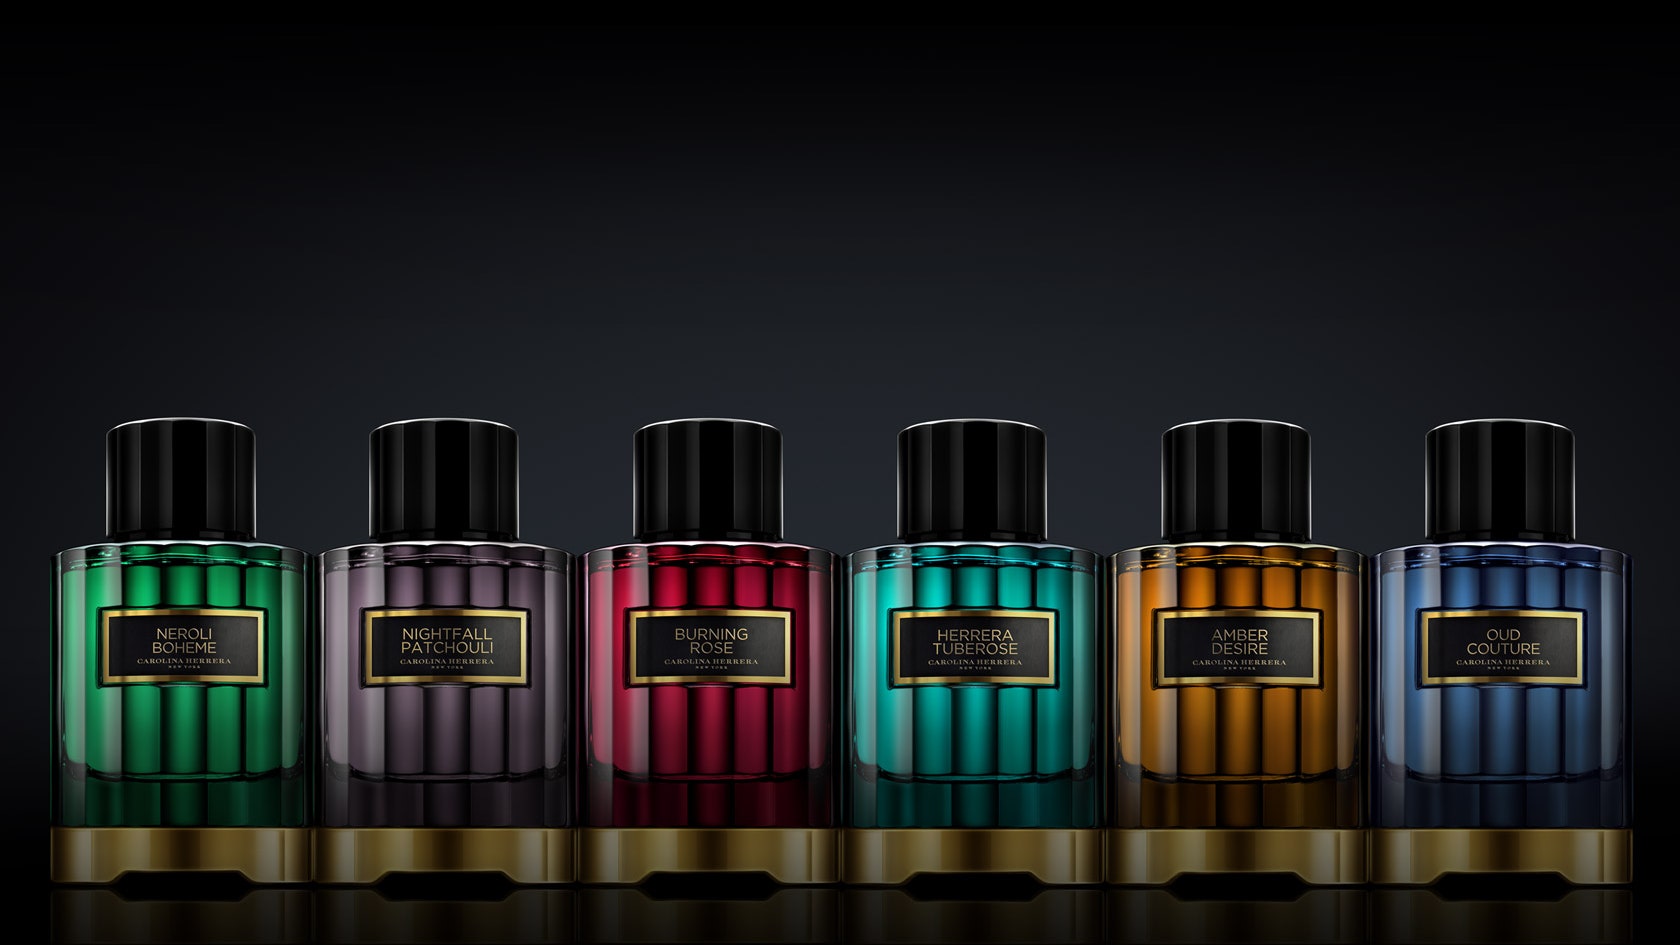 Коллекция Confidential от Carolina Herrera шесть ароматов и четыре ароматических масла | Allure